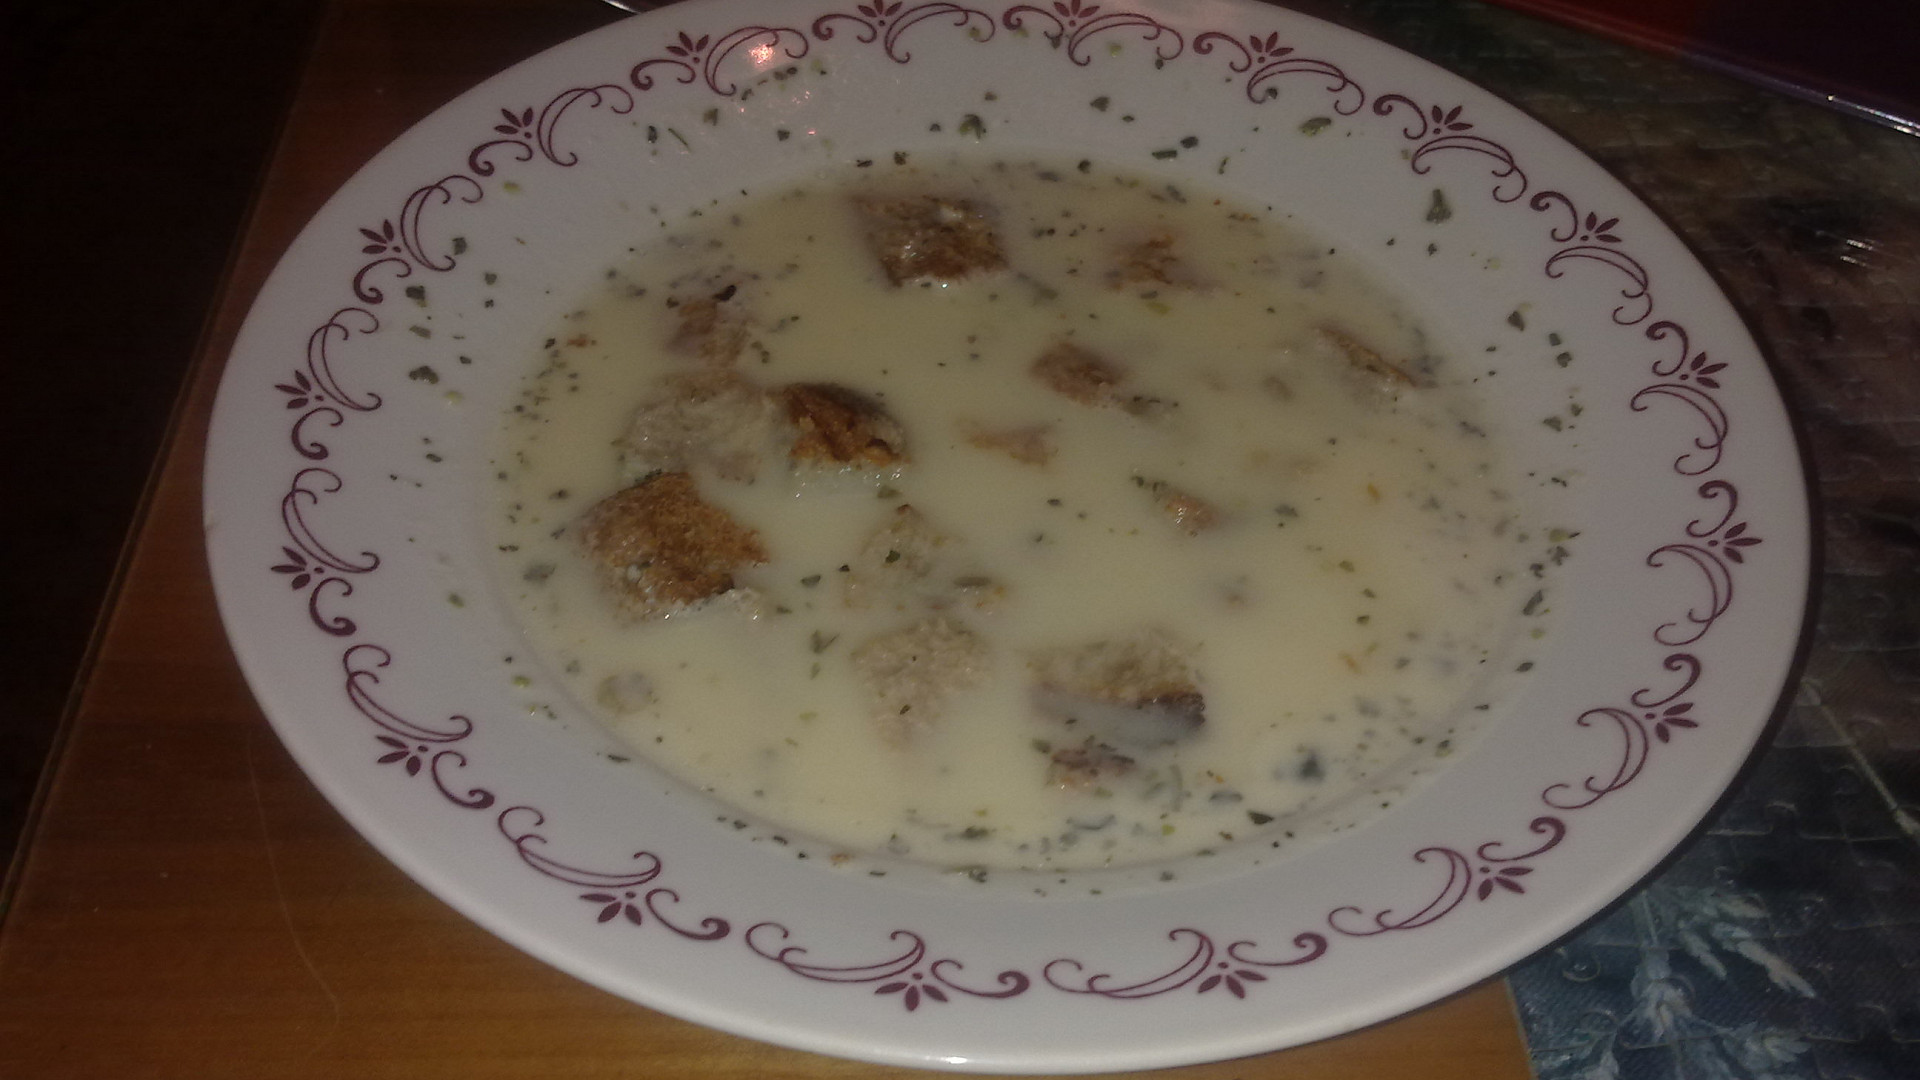 Sýrová polévka ála Žmolová